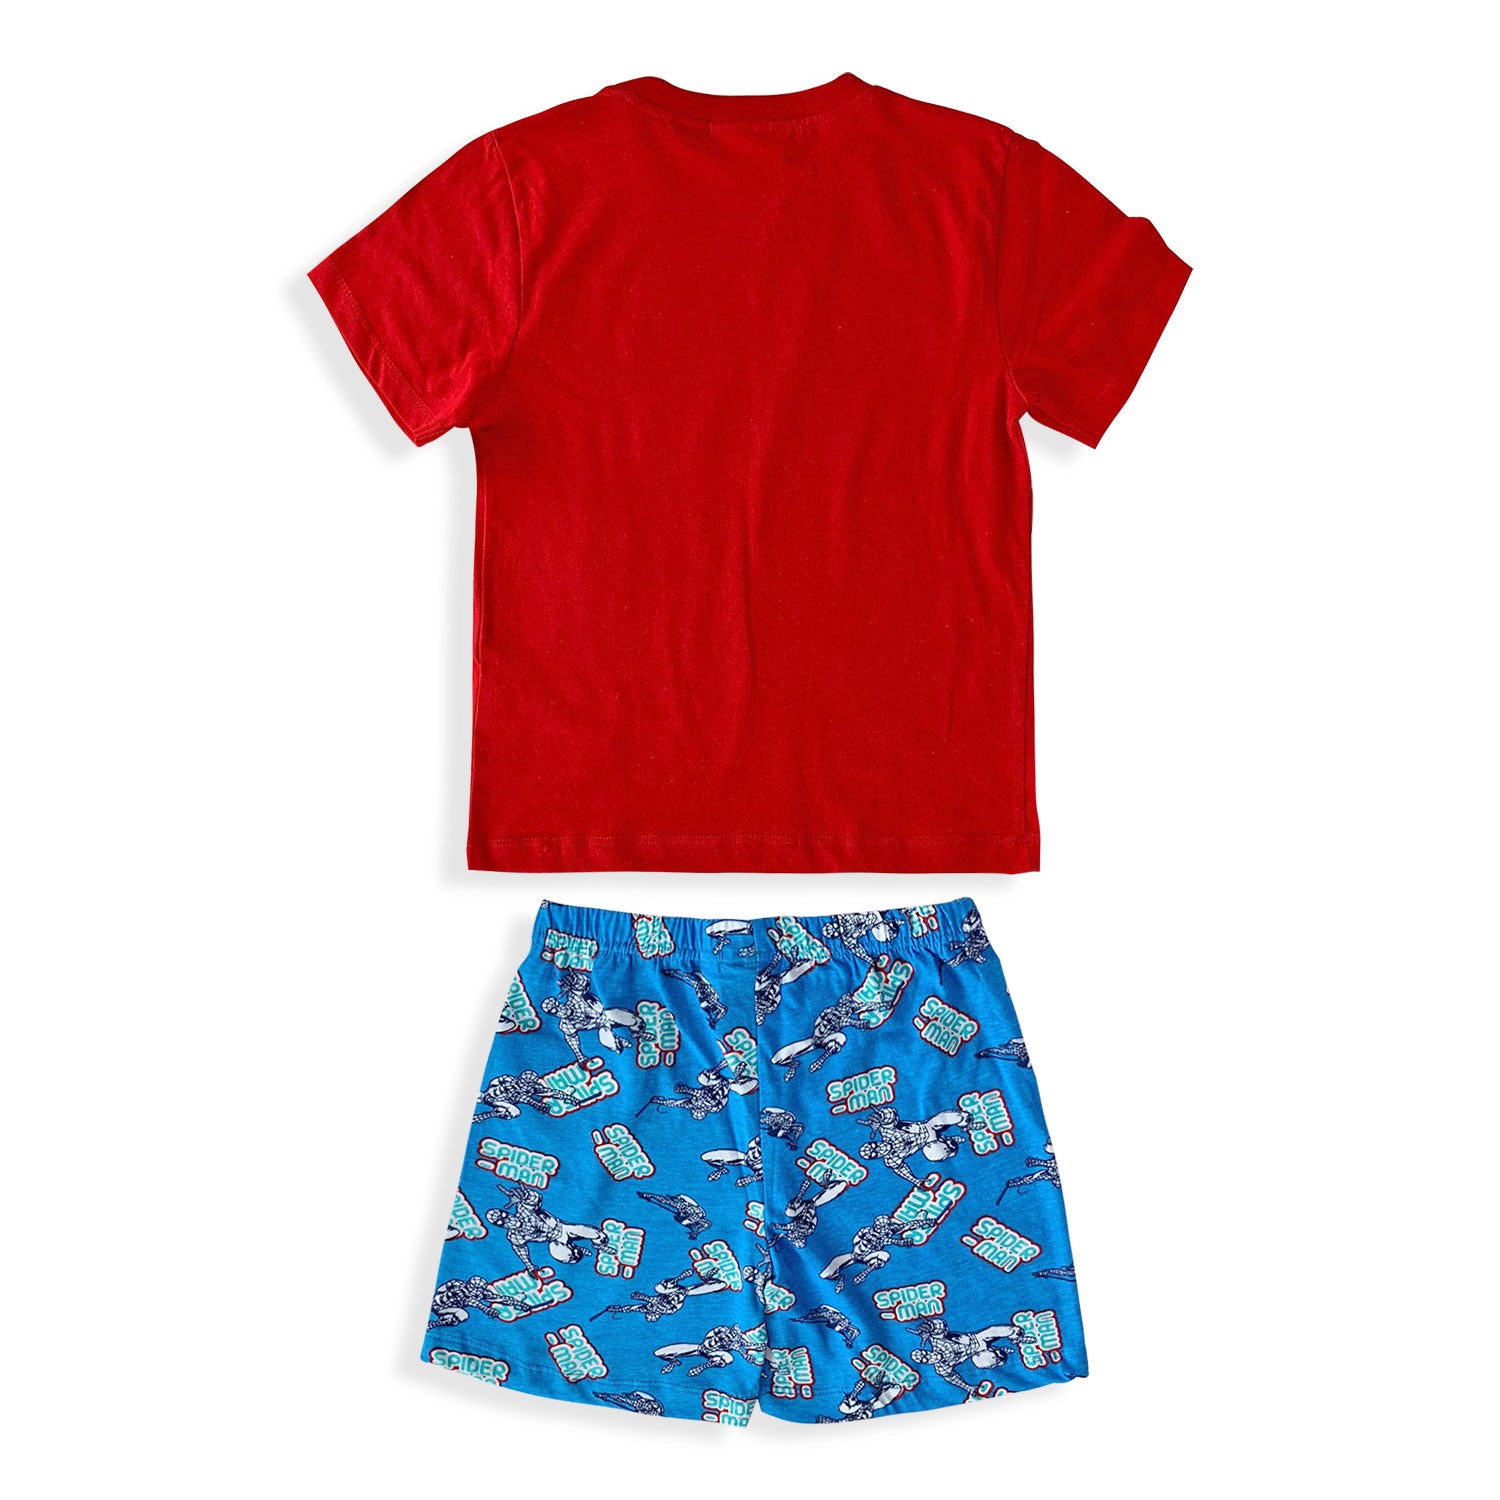 Pigiama bambino Marvel Spiderman t-shirt e pantaloncino in cotone stampato 5373